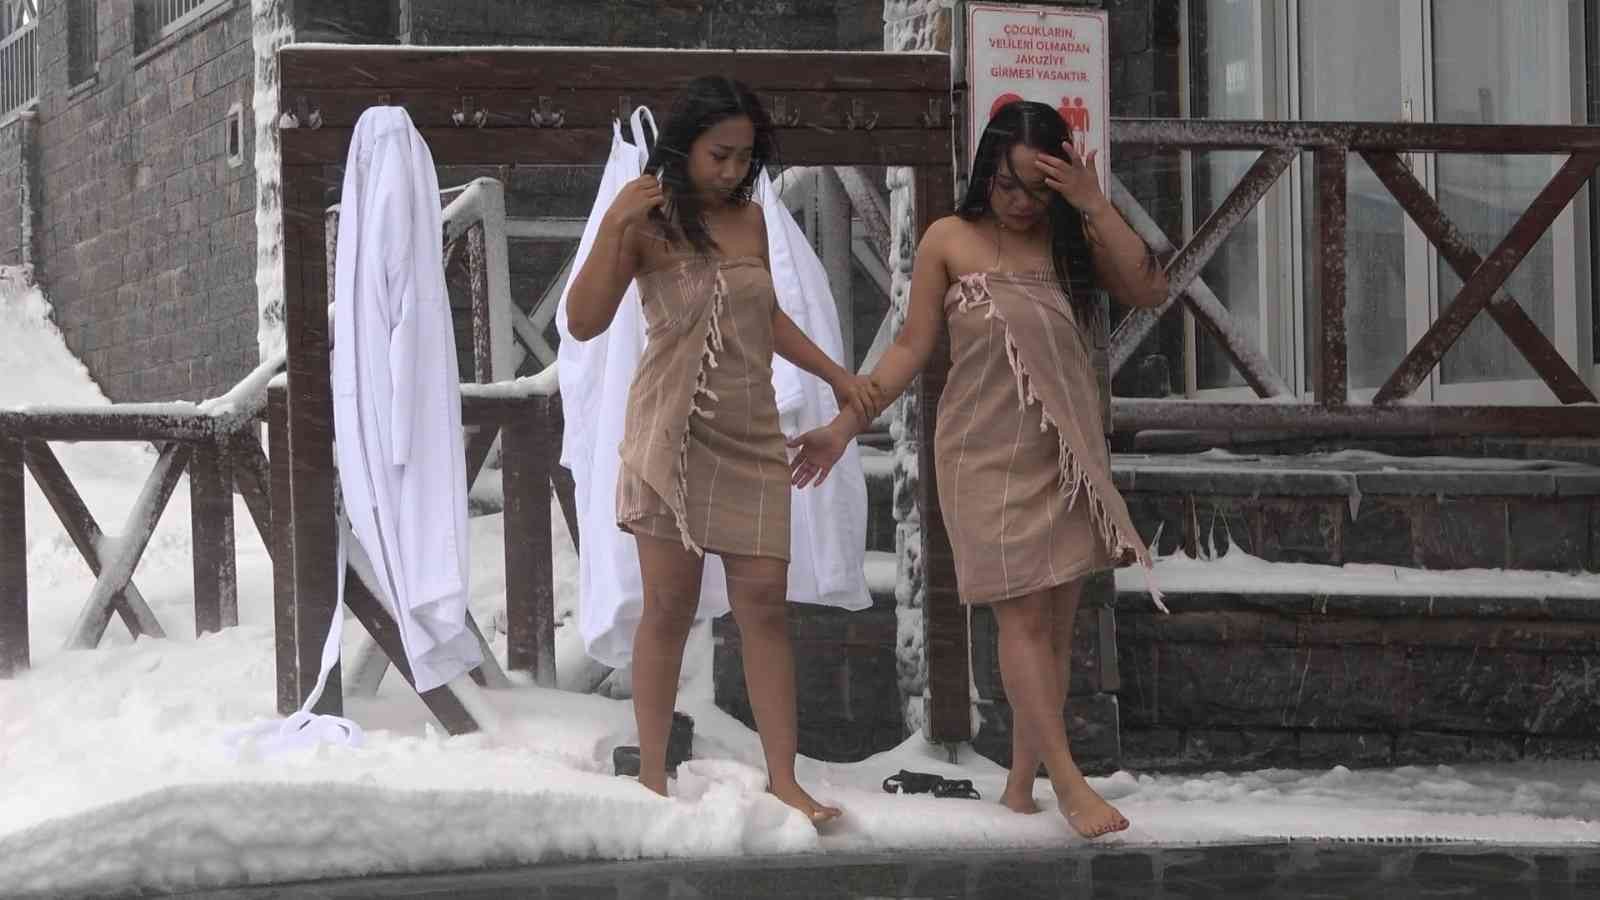 (Özel) Uludağ’a gelen turistler dondurucu soğukta sıcak havuzun keyfini çıkartıyor